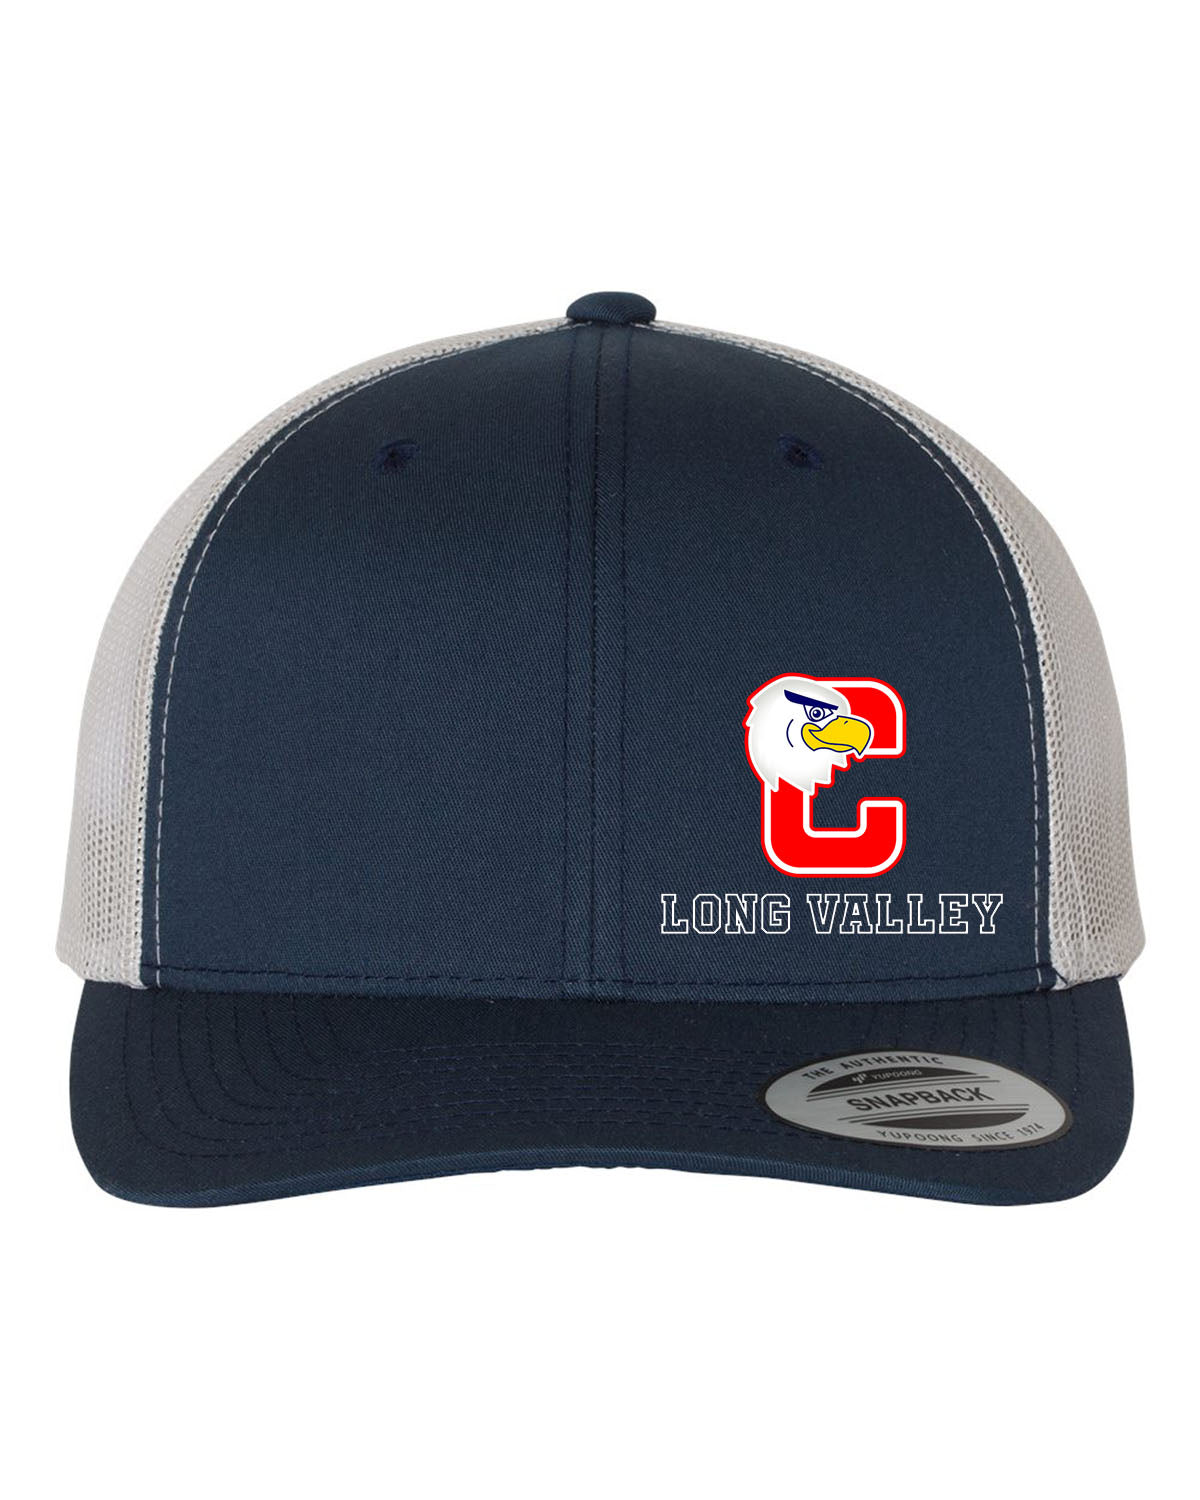 Cucinella Design 2 Trucker Hat